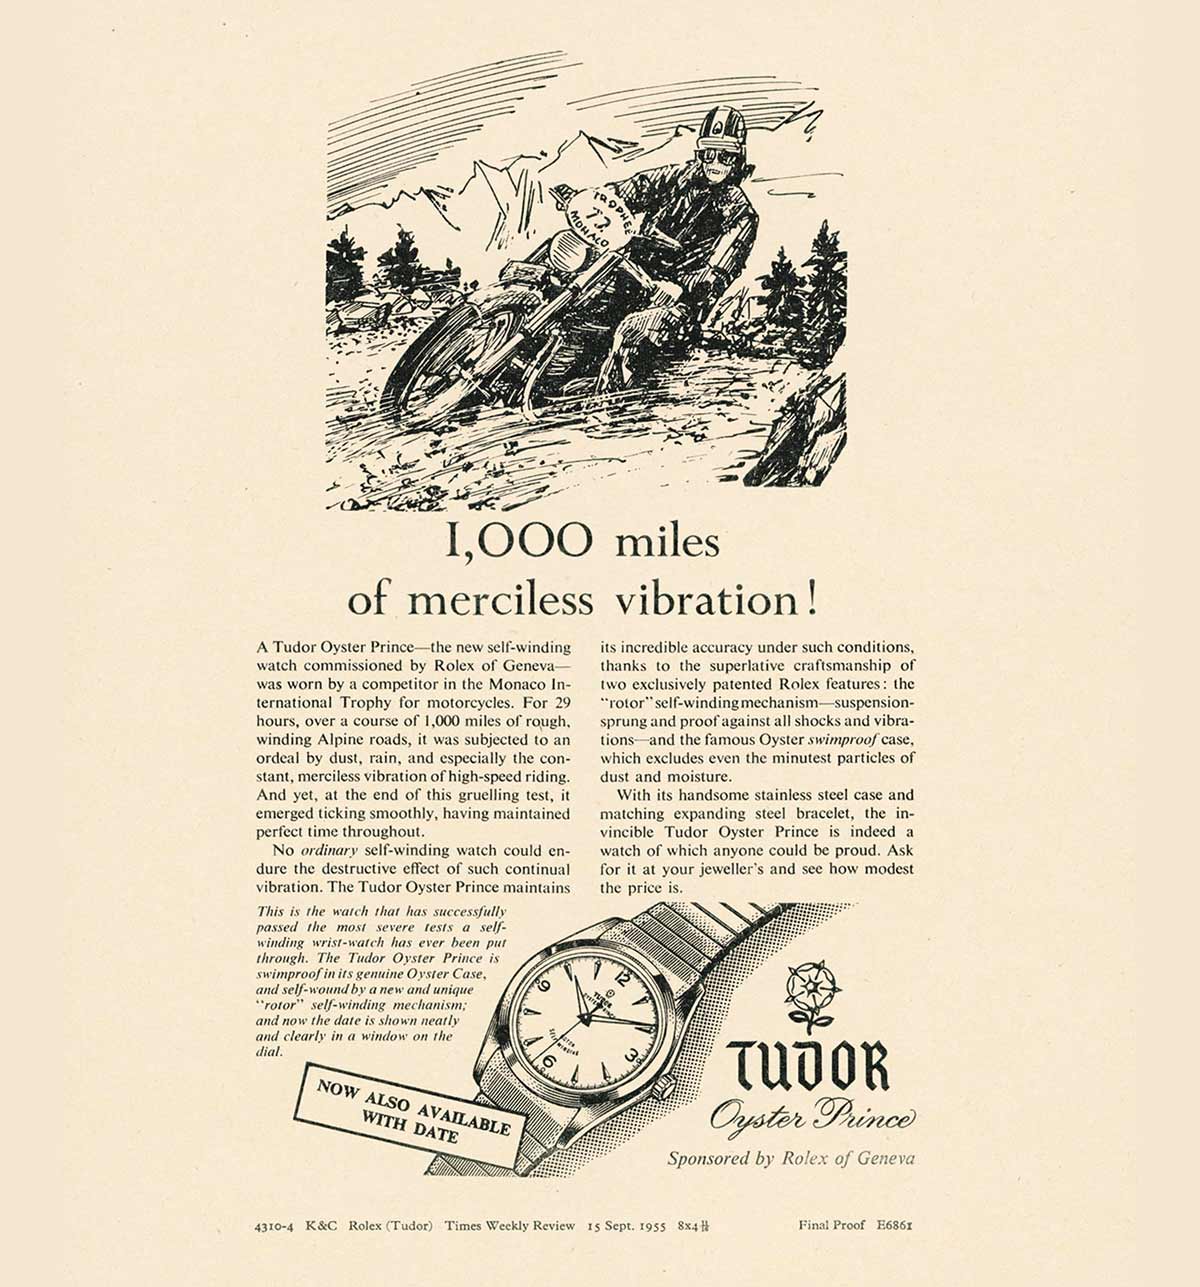 Historia sobre los relojes Tudor